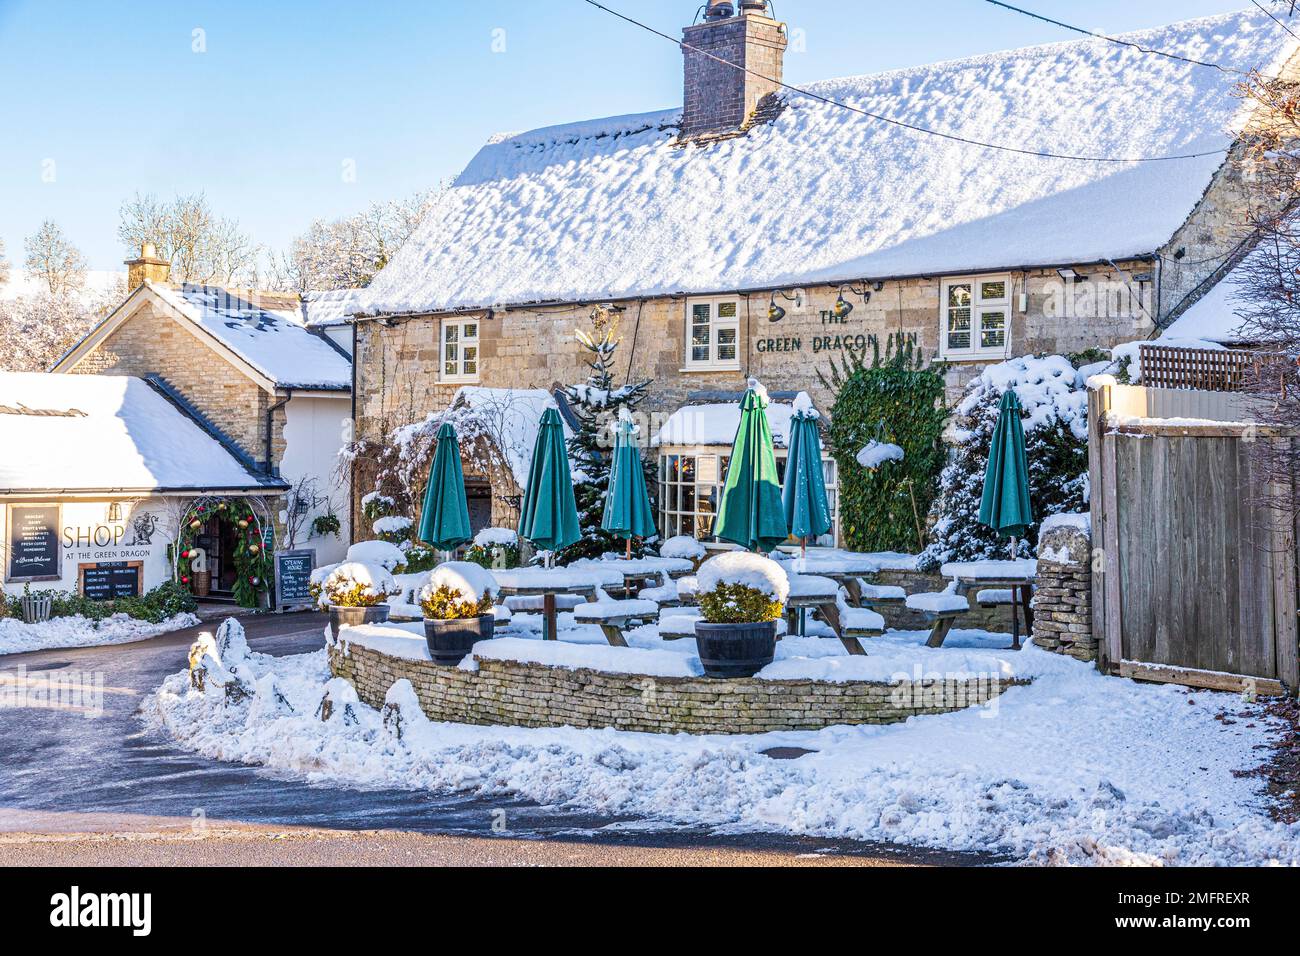 Début de l'hiver, neige au Green Dragon Inn Pub & Shop dans le village de Cotswold à Cockleford près de Cowley, Gloucestershire, Angleterre Banque D'Images